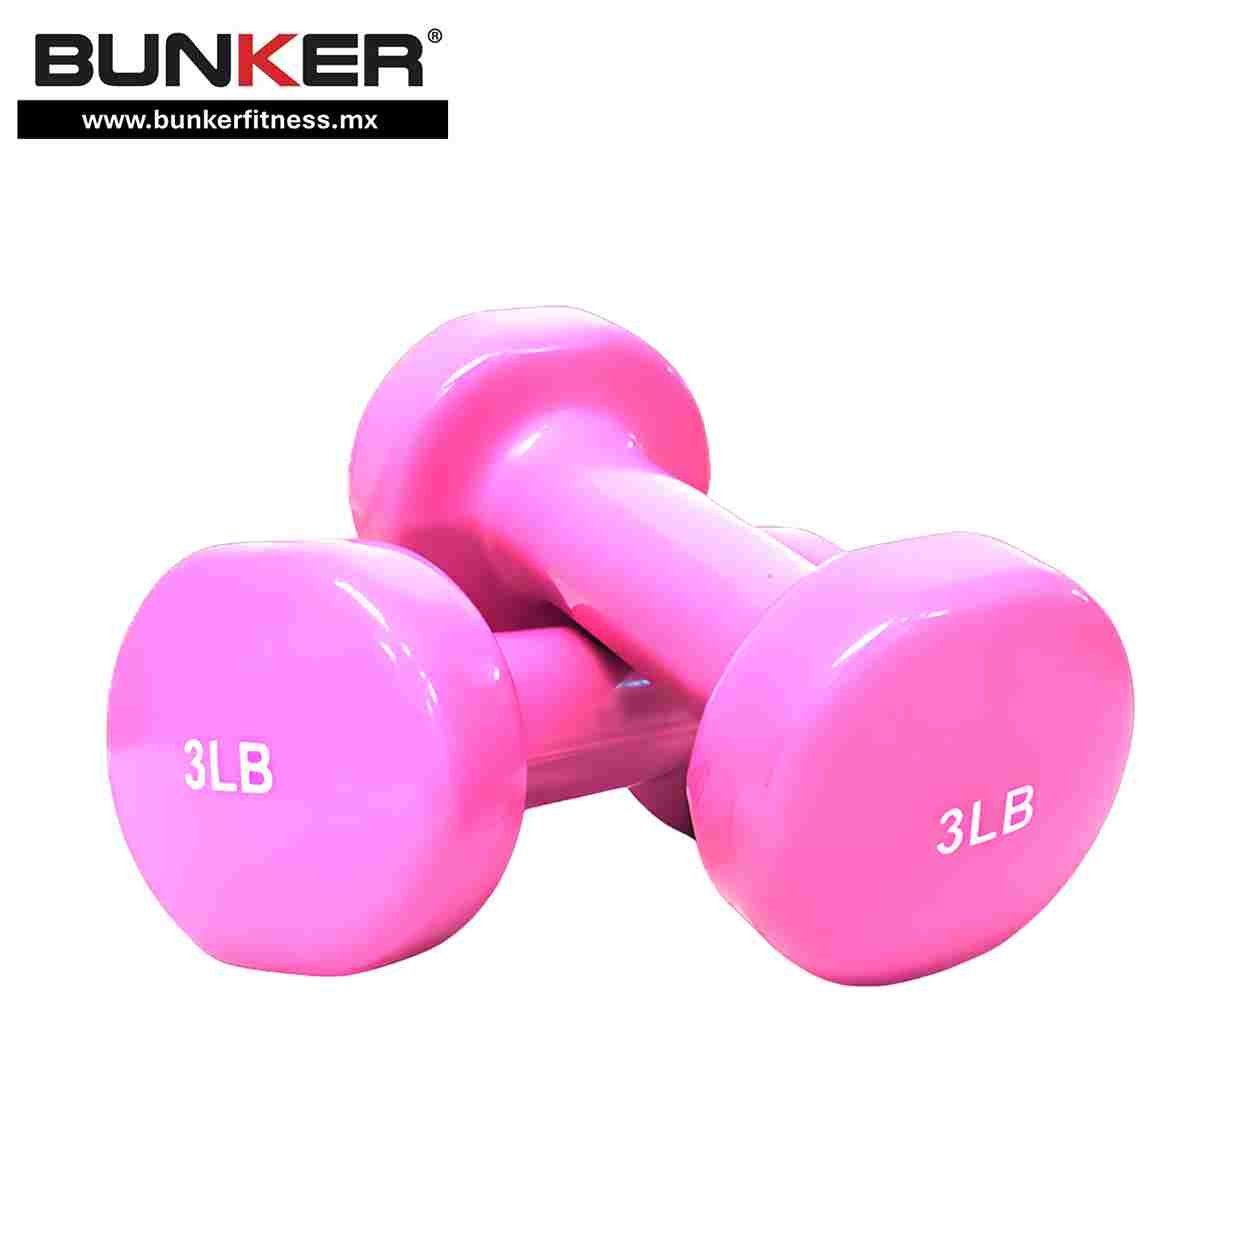 mancuernas de 3 libras rosas vinil fitness para ejercicio y gimnasio en casa bunker gym bunker fitness